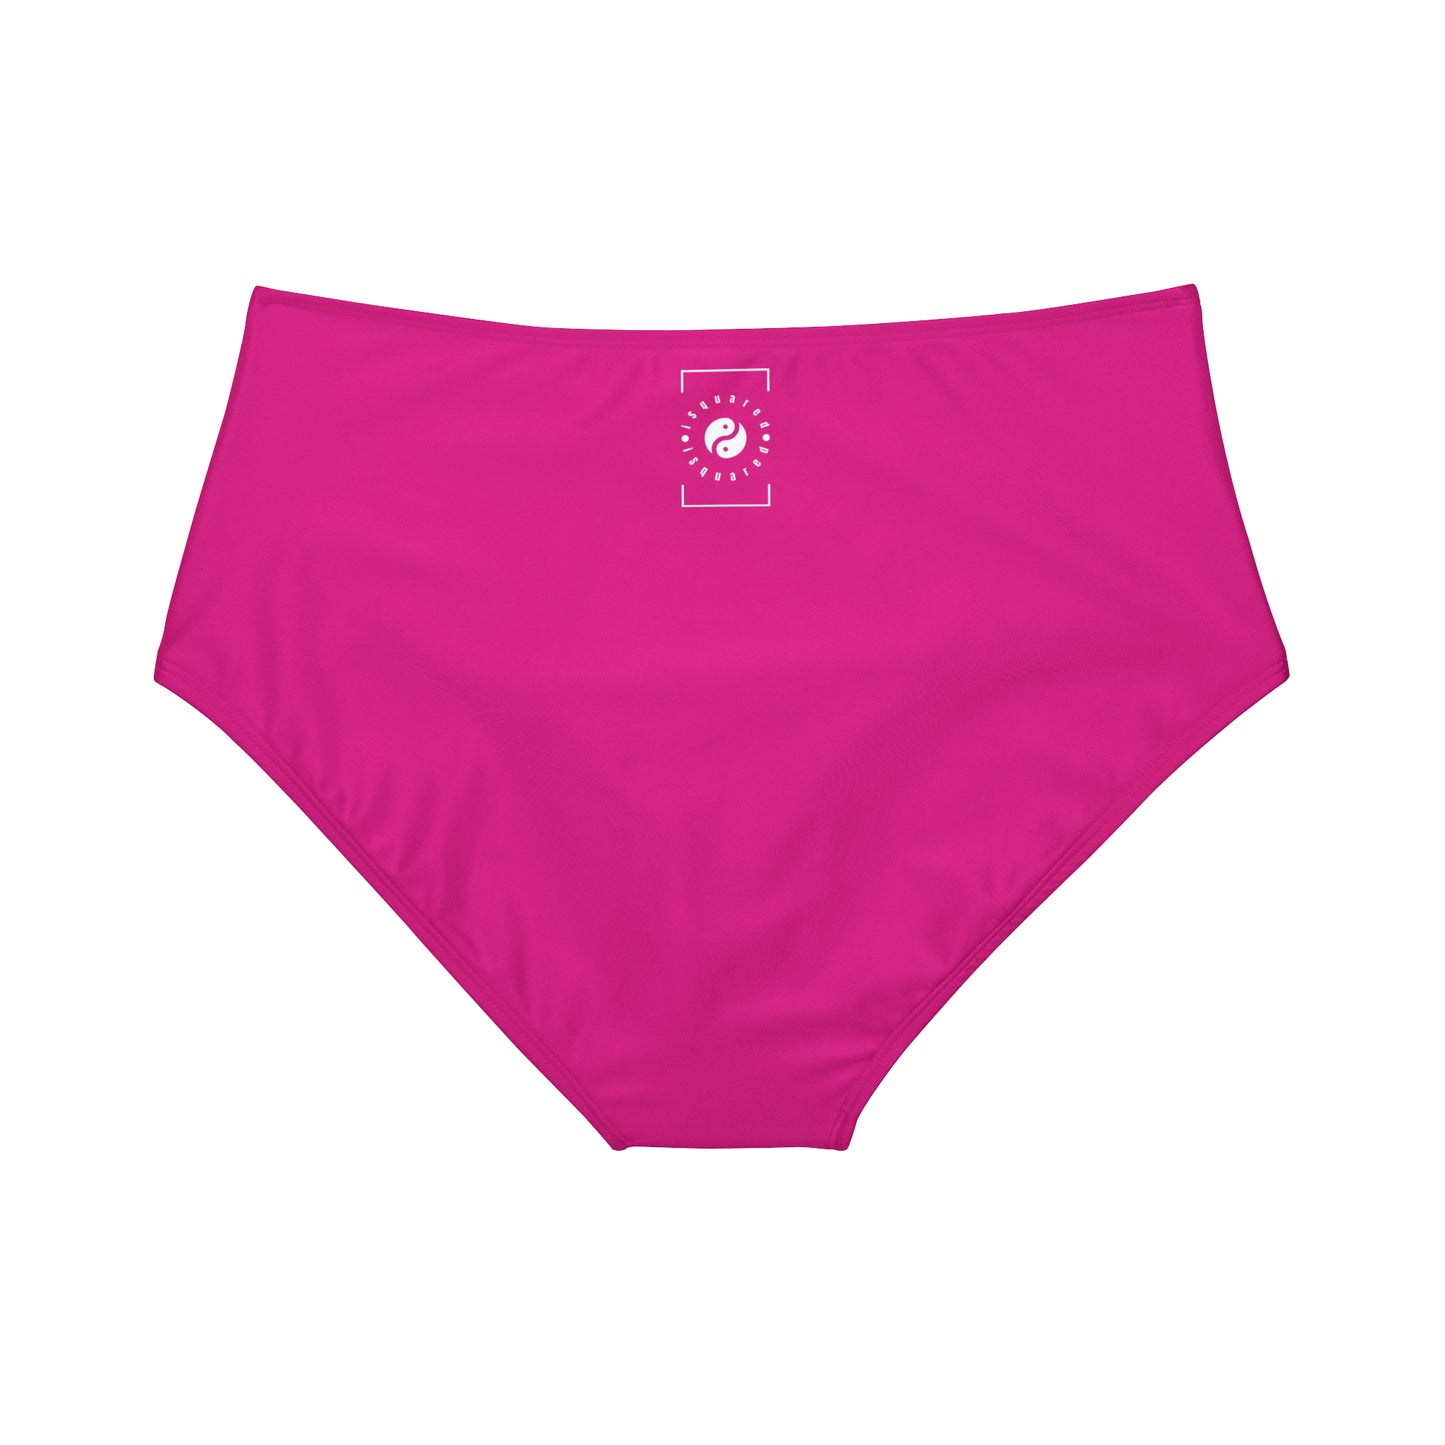 E0218A Pink - High Waisted Bikini Bottom